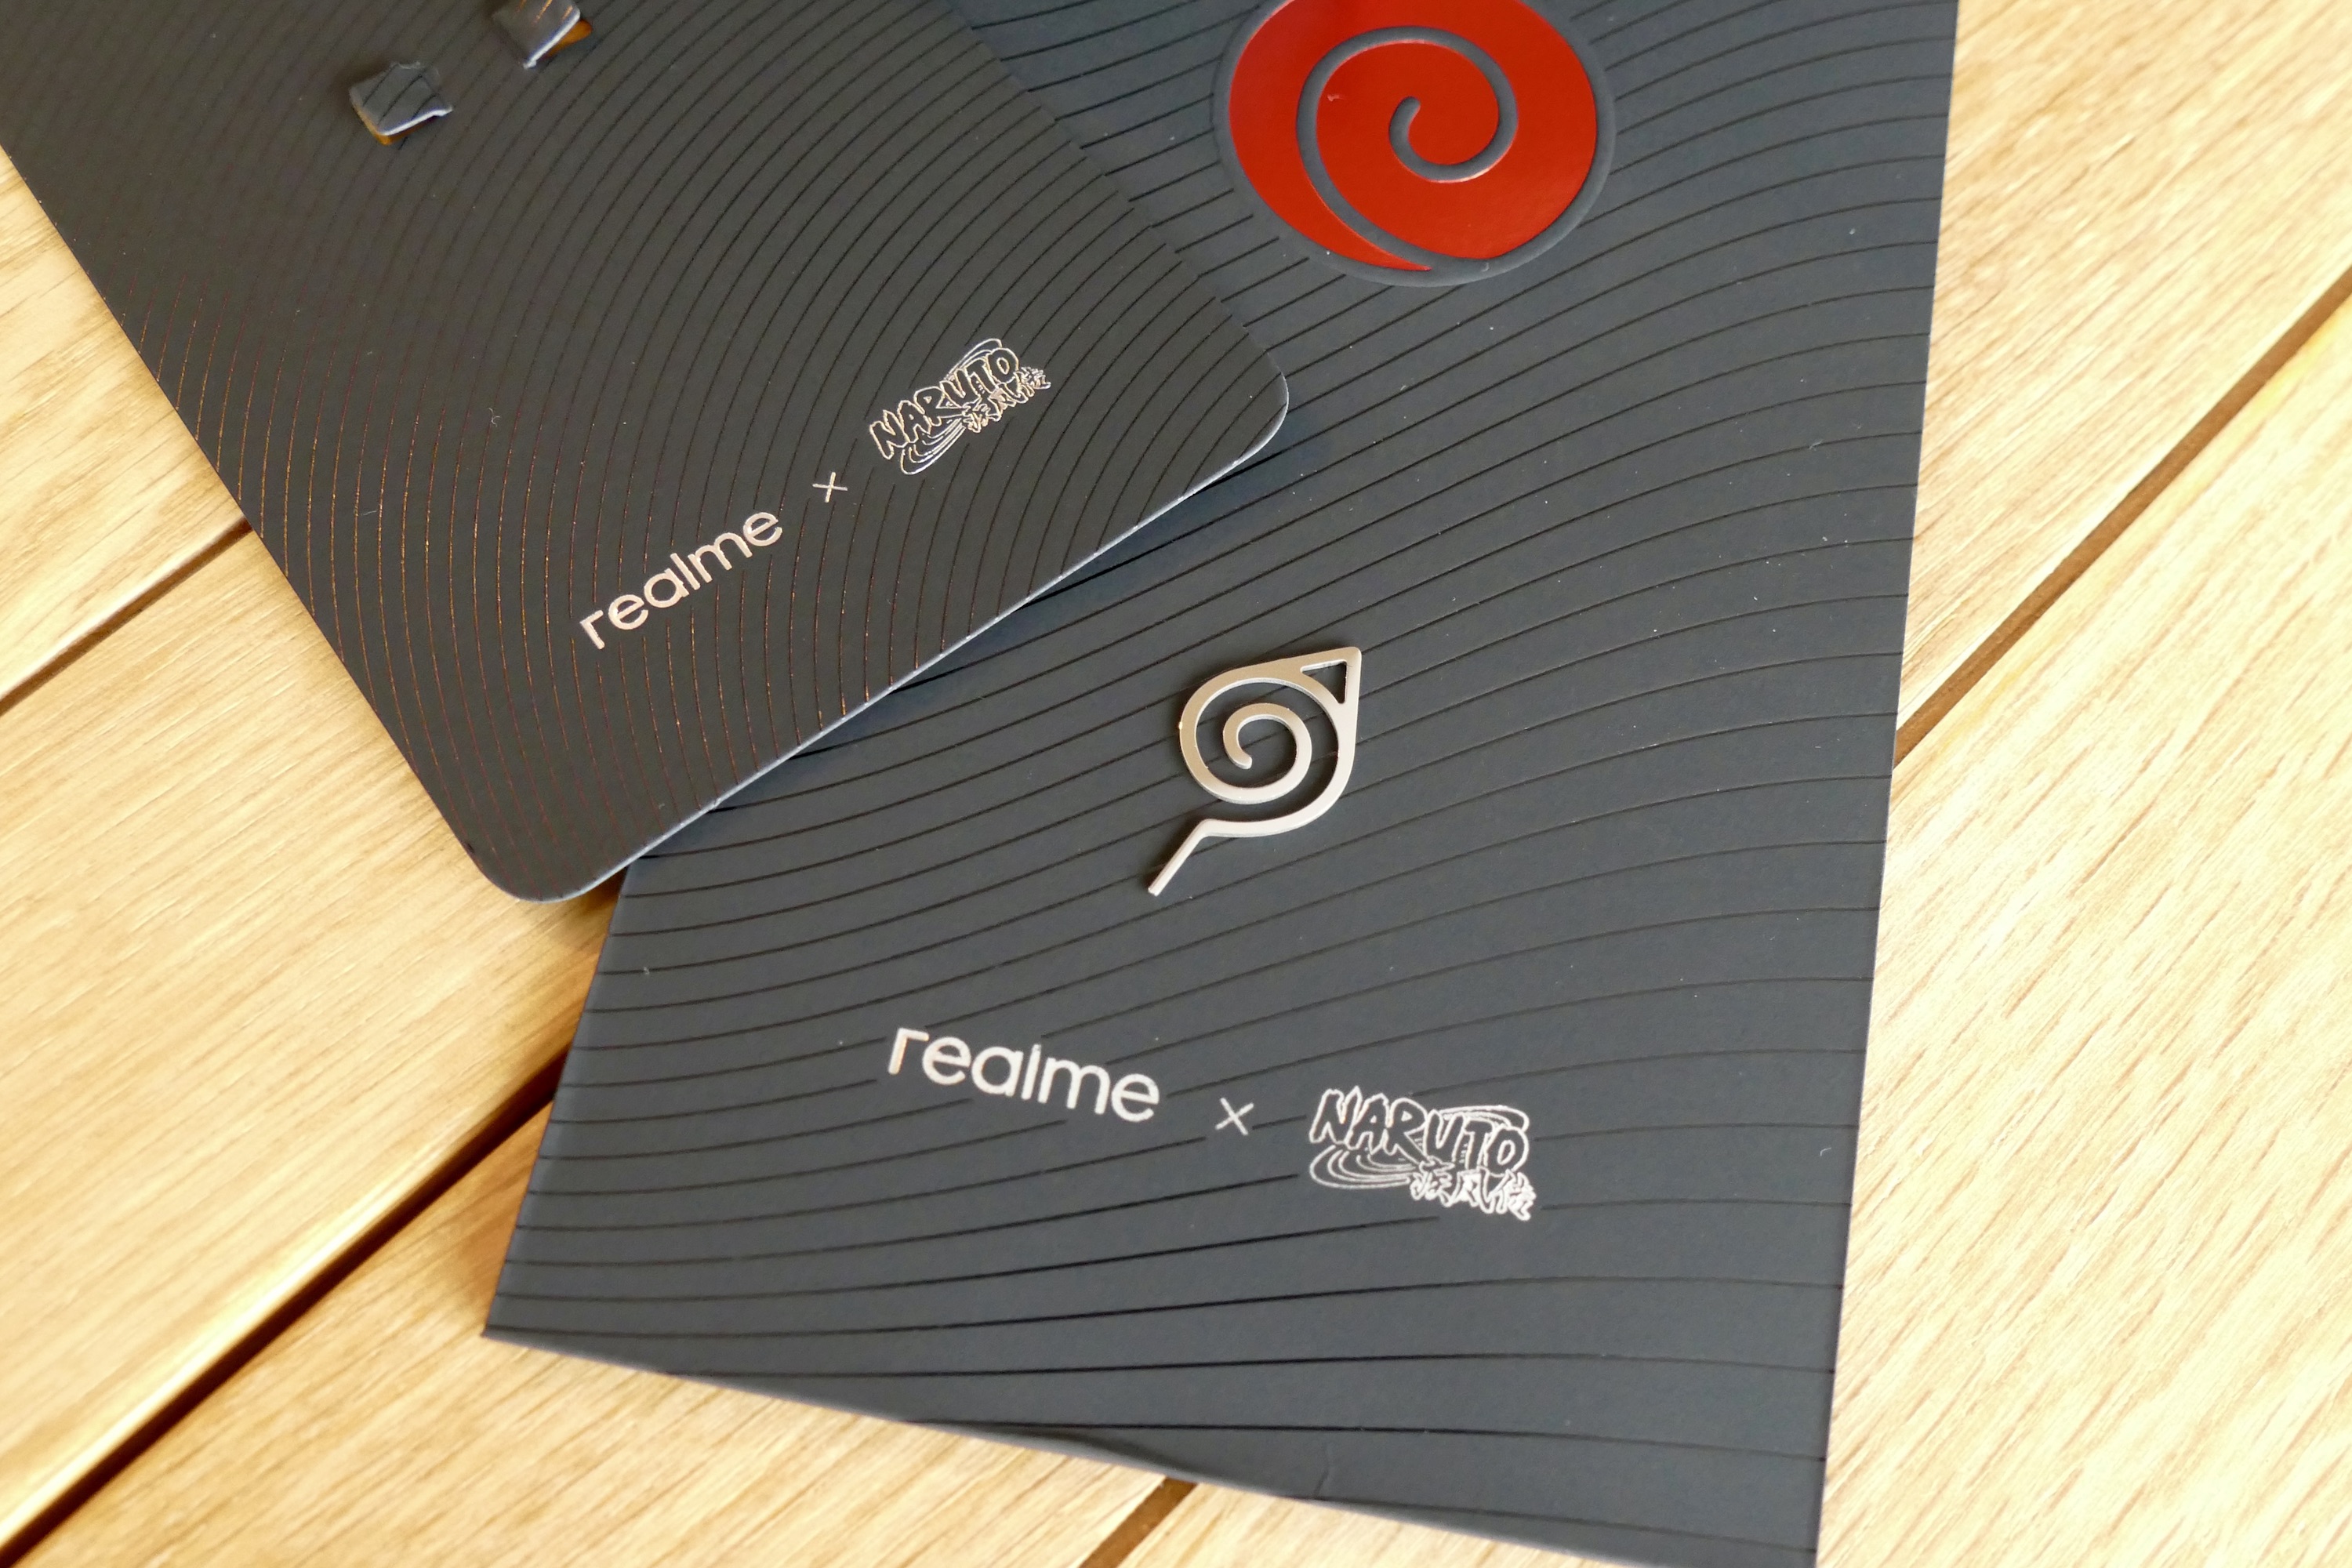 Realme x Naruto GT Neo 3 SIM removal tool.